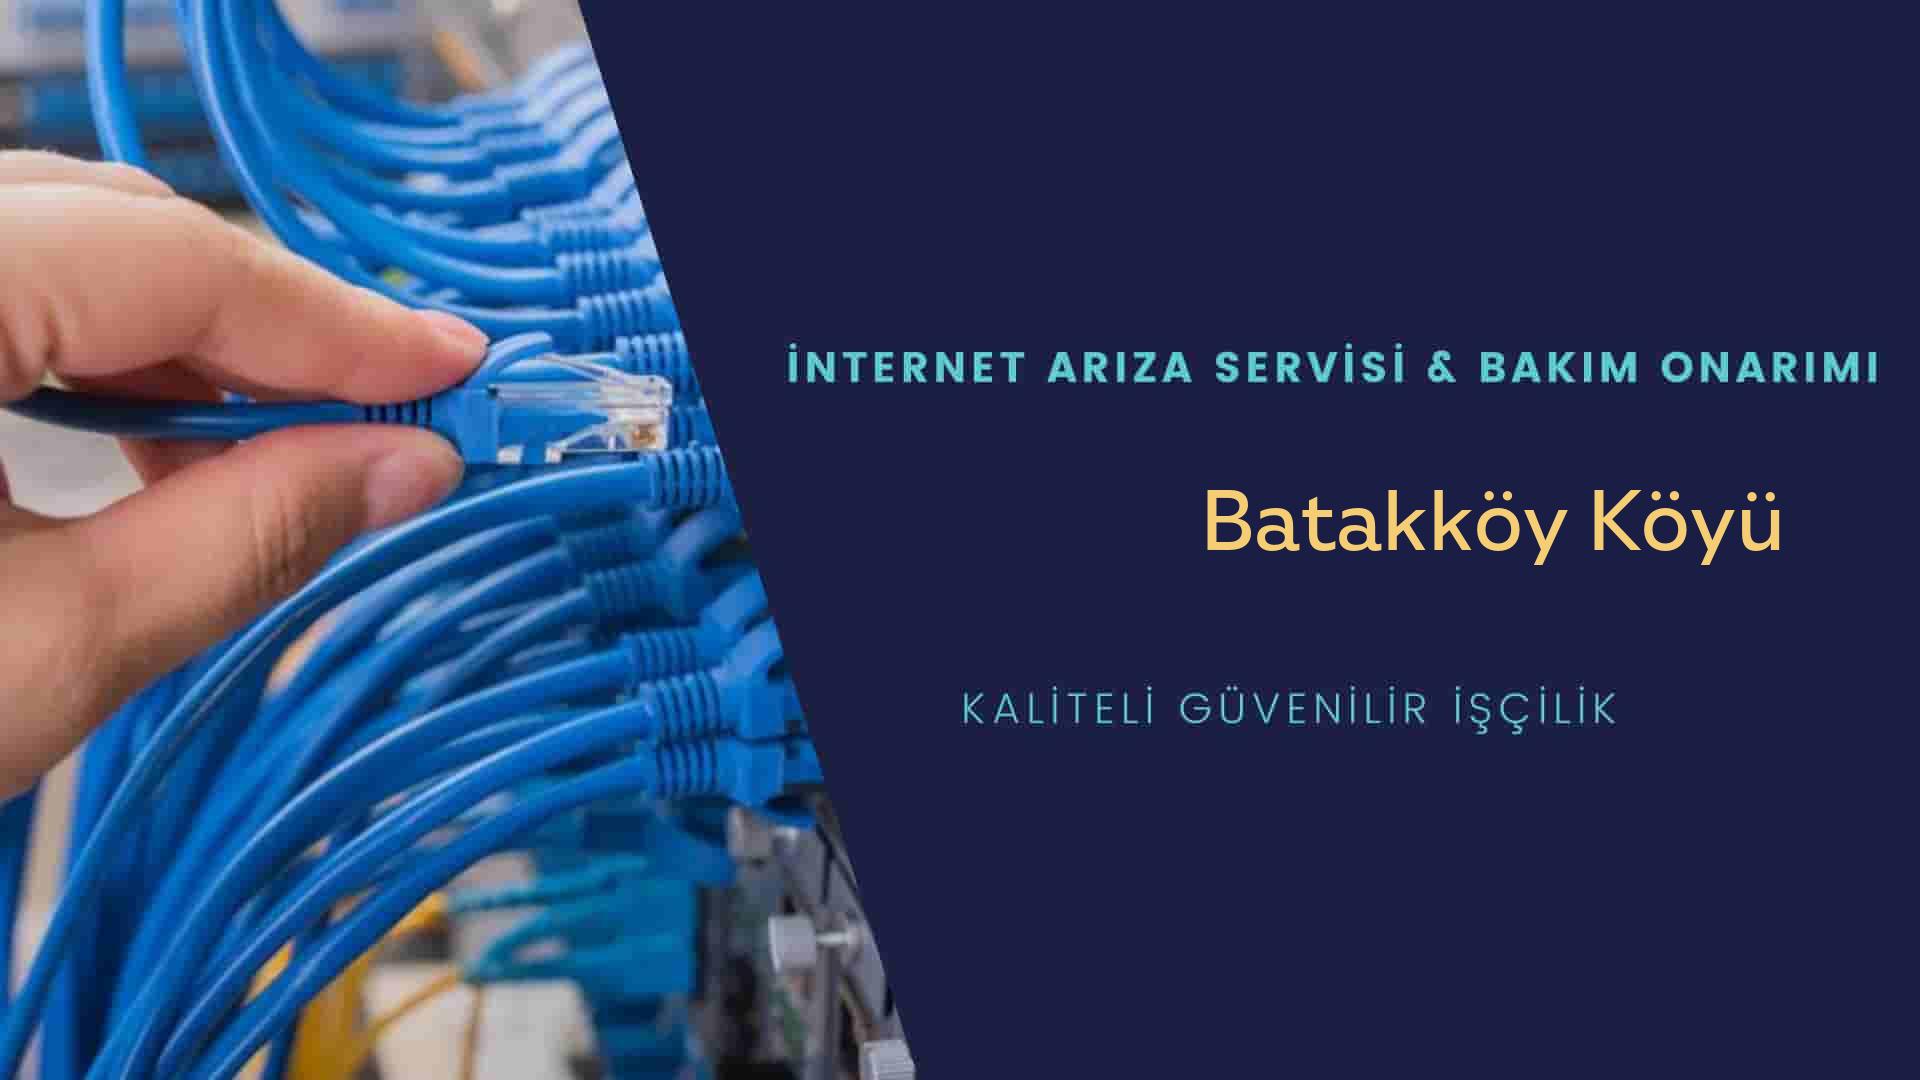 Batakköy Köyü internet kablosu çekimi yapan yerler veya elektrikçiler mi? arıyorsunuz doğru yerdesiniz o zaman sizlere 7/24 yardımcı olacak profesyonel ustalarımız bir telefon kadar yakındır size.